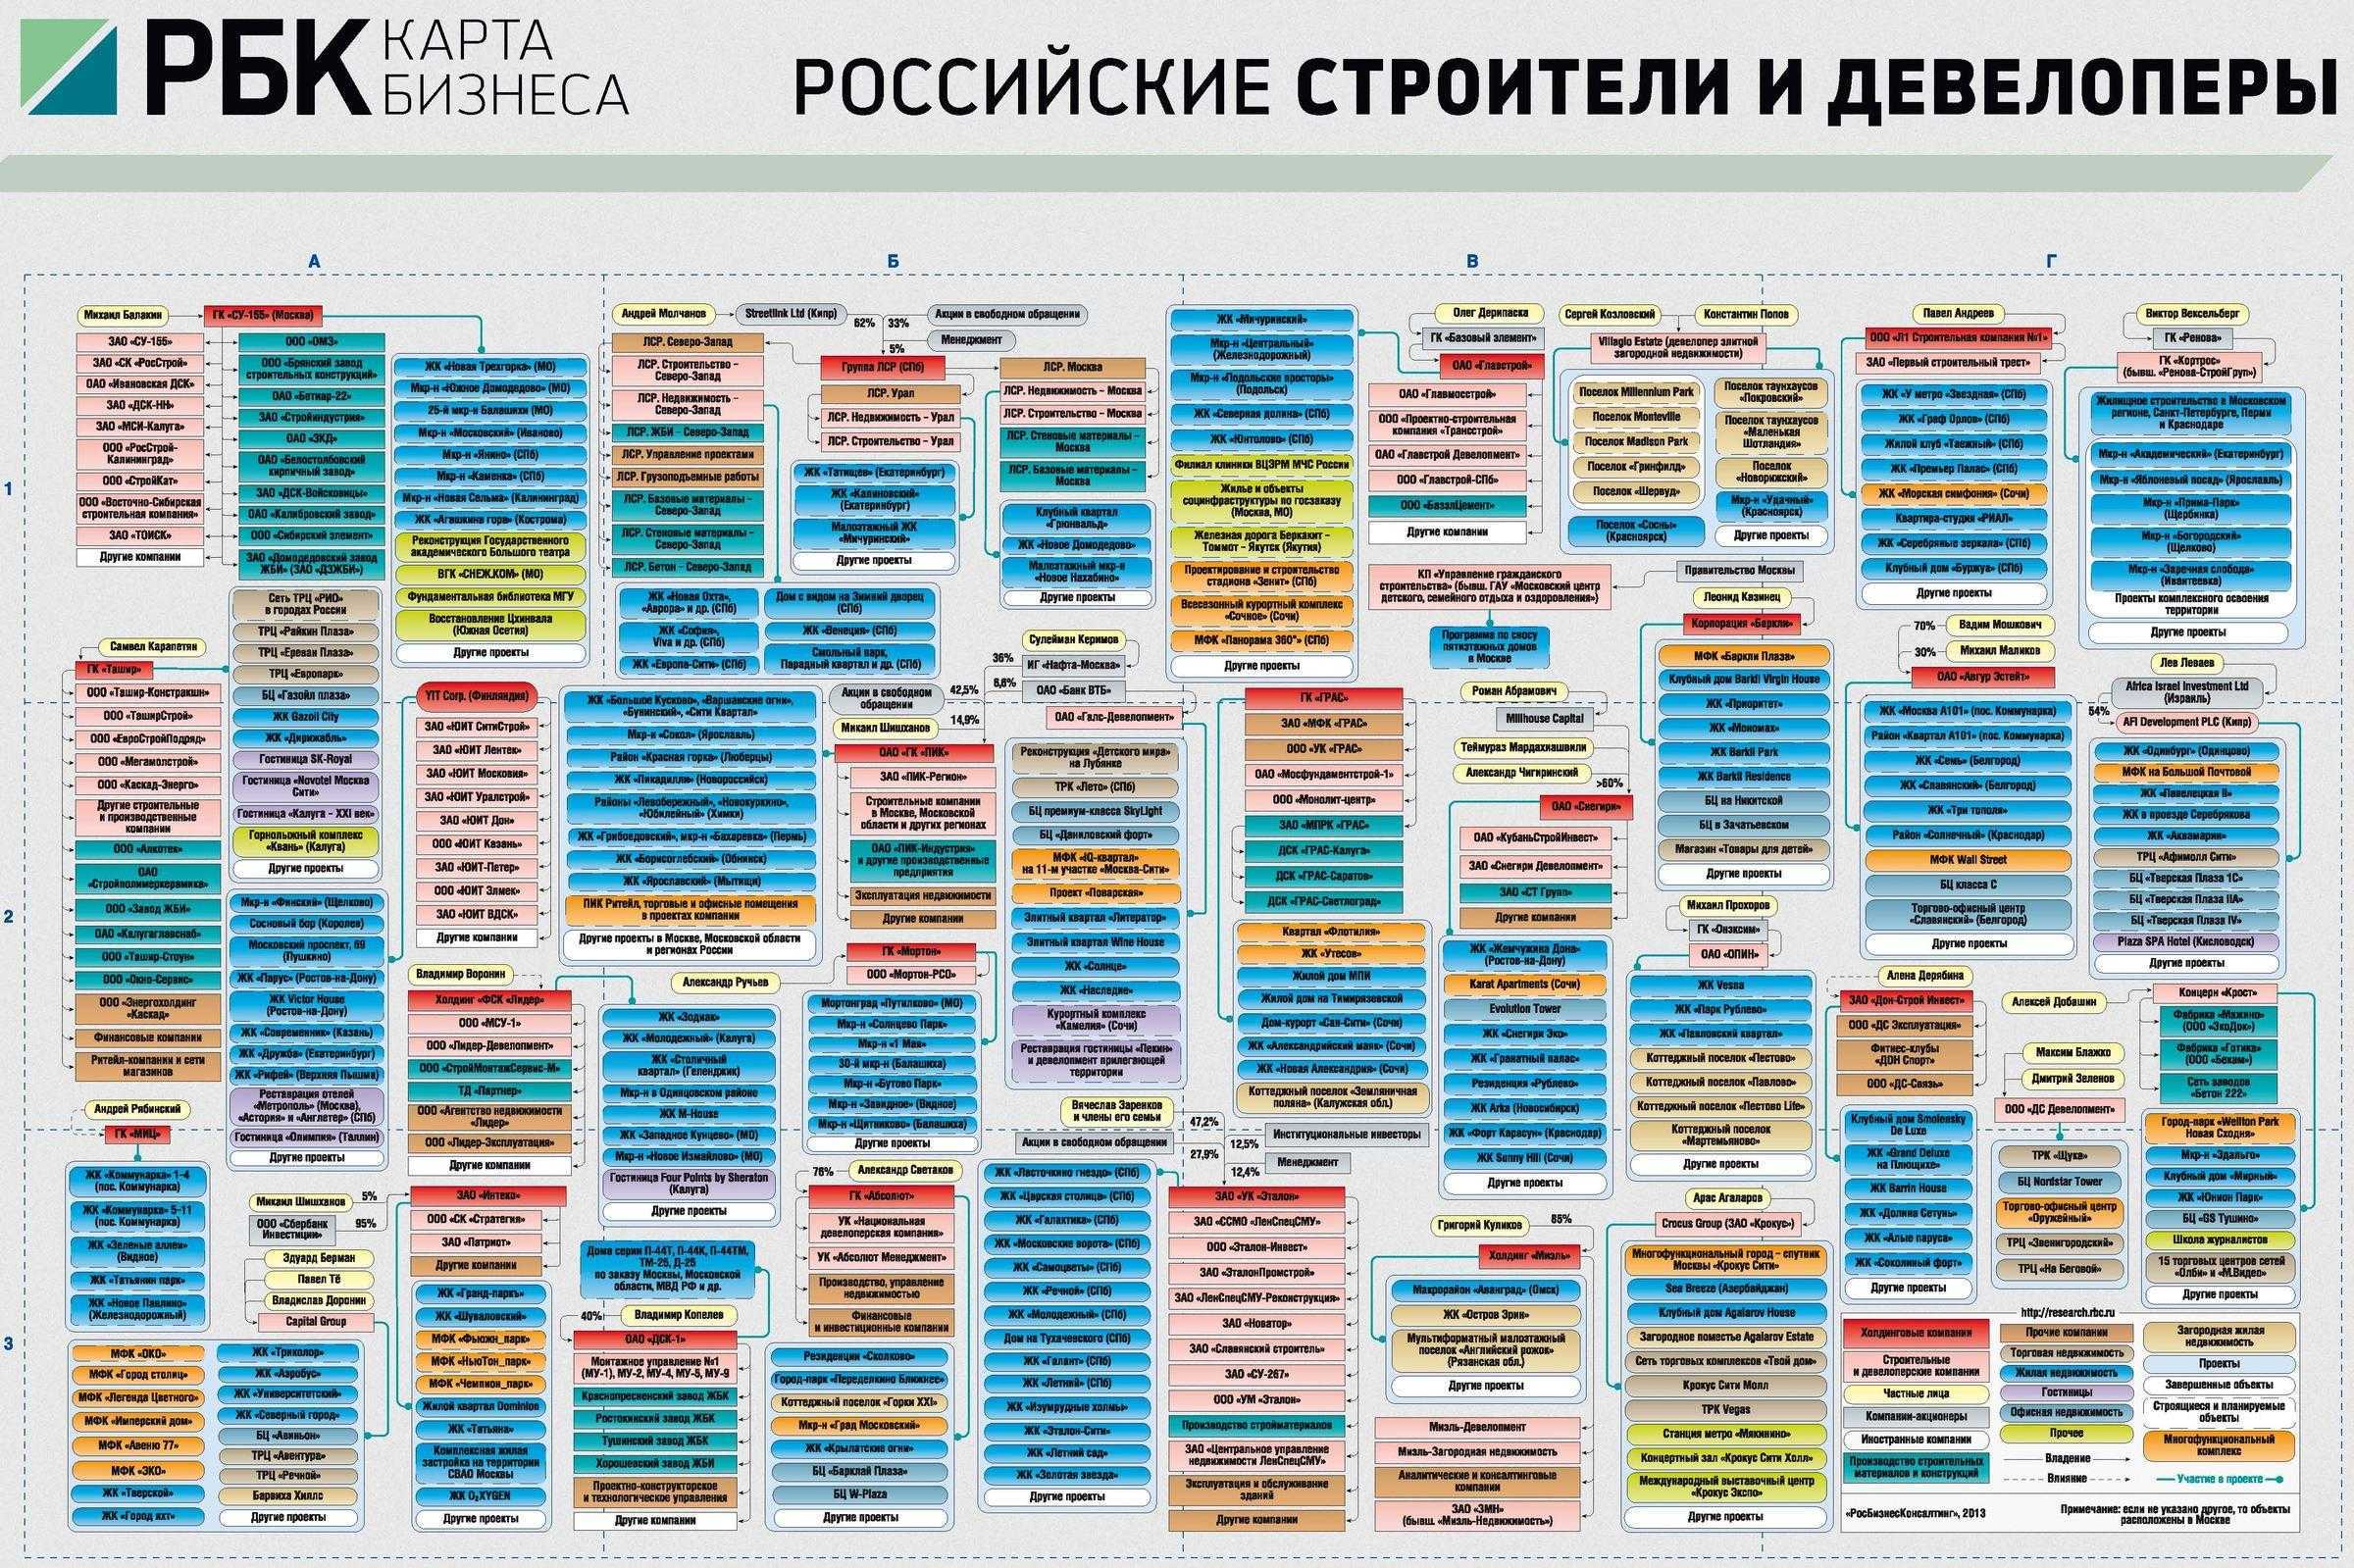 Кому принадлежит c. Бизнес карта. РБК карта бизнеса. Карта российского бизнеса РБК. Кто владеет Россией РБК.